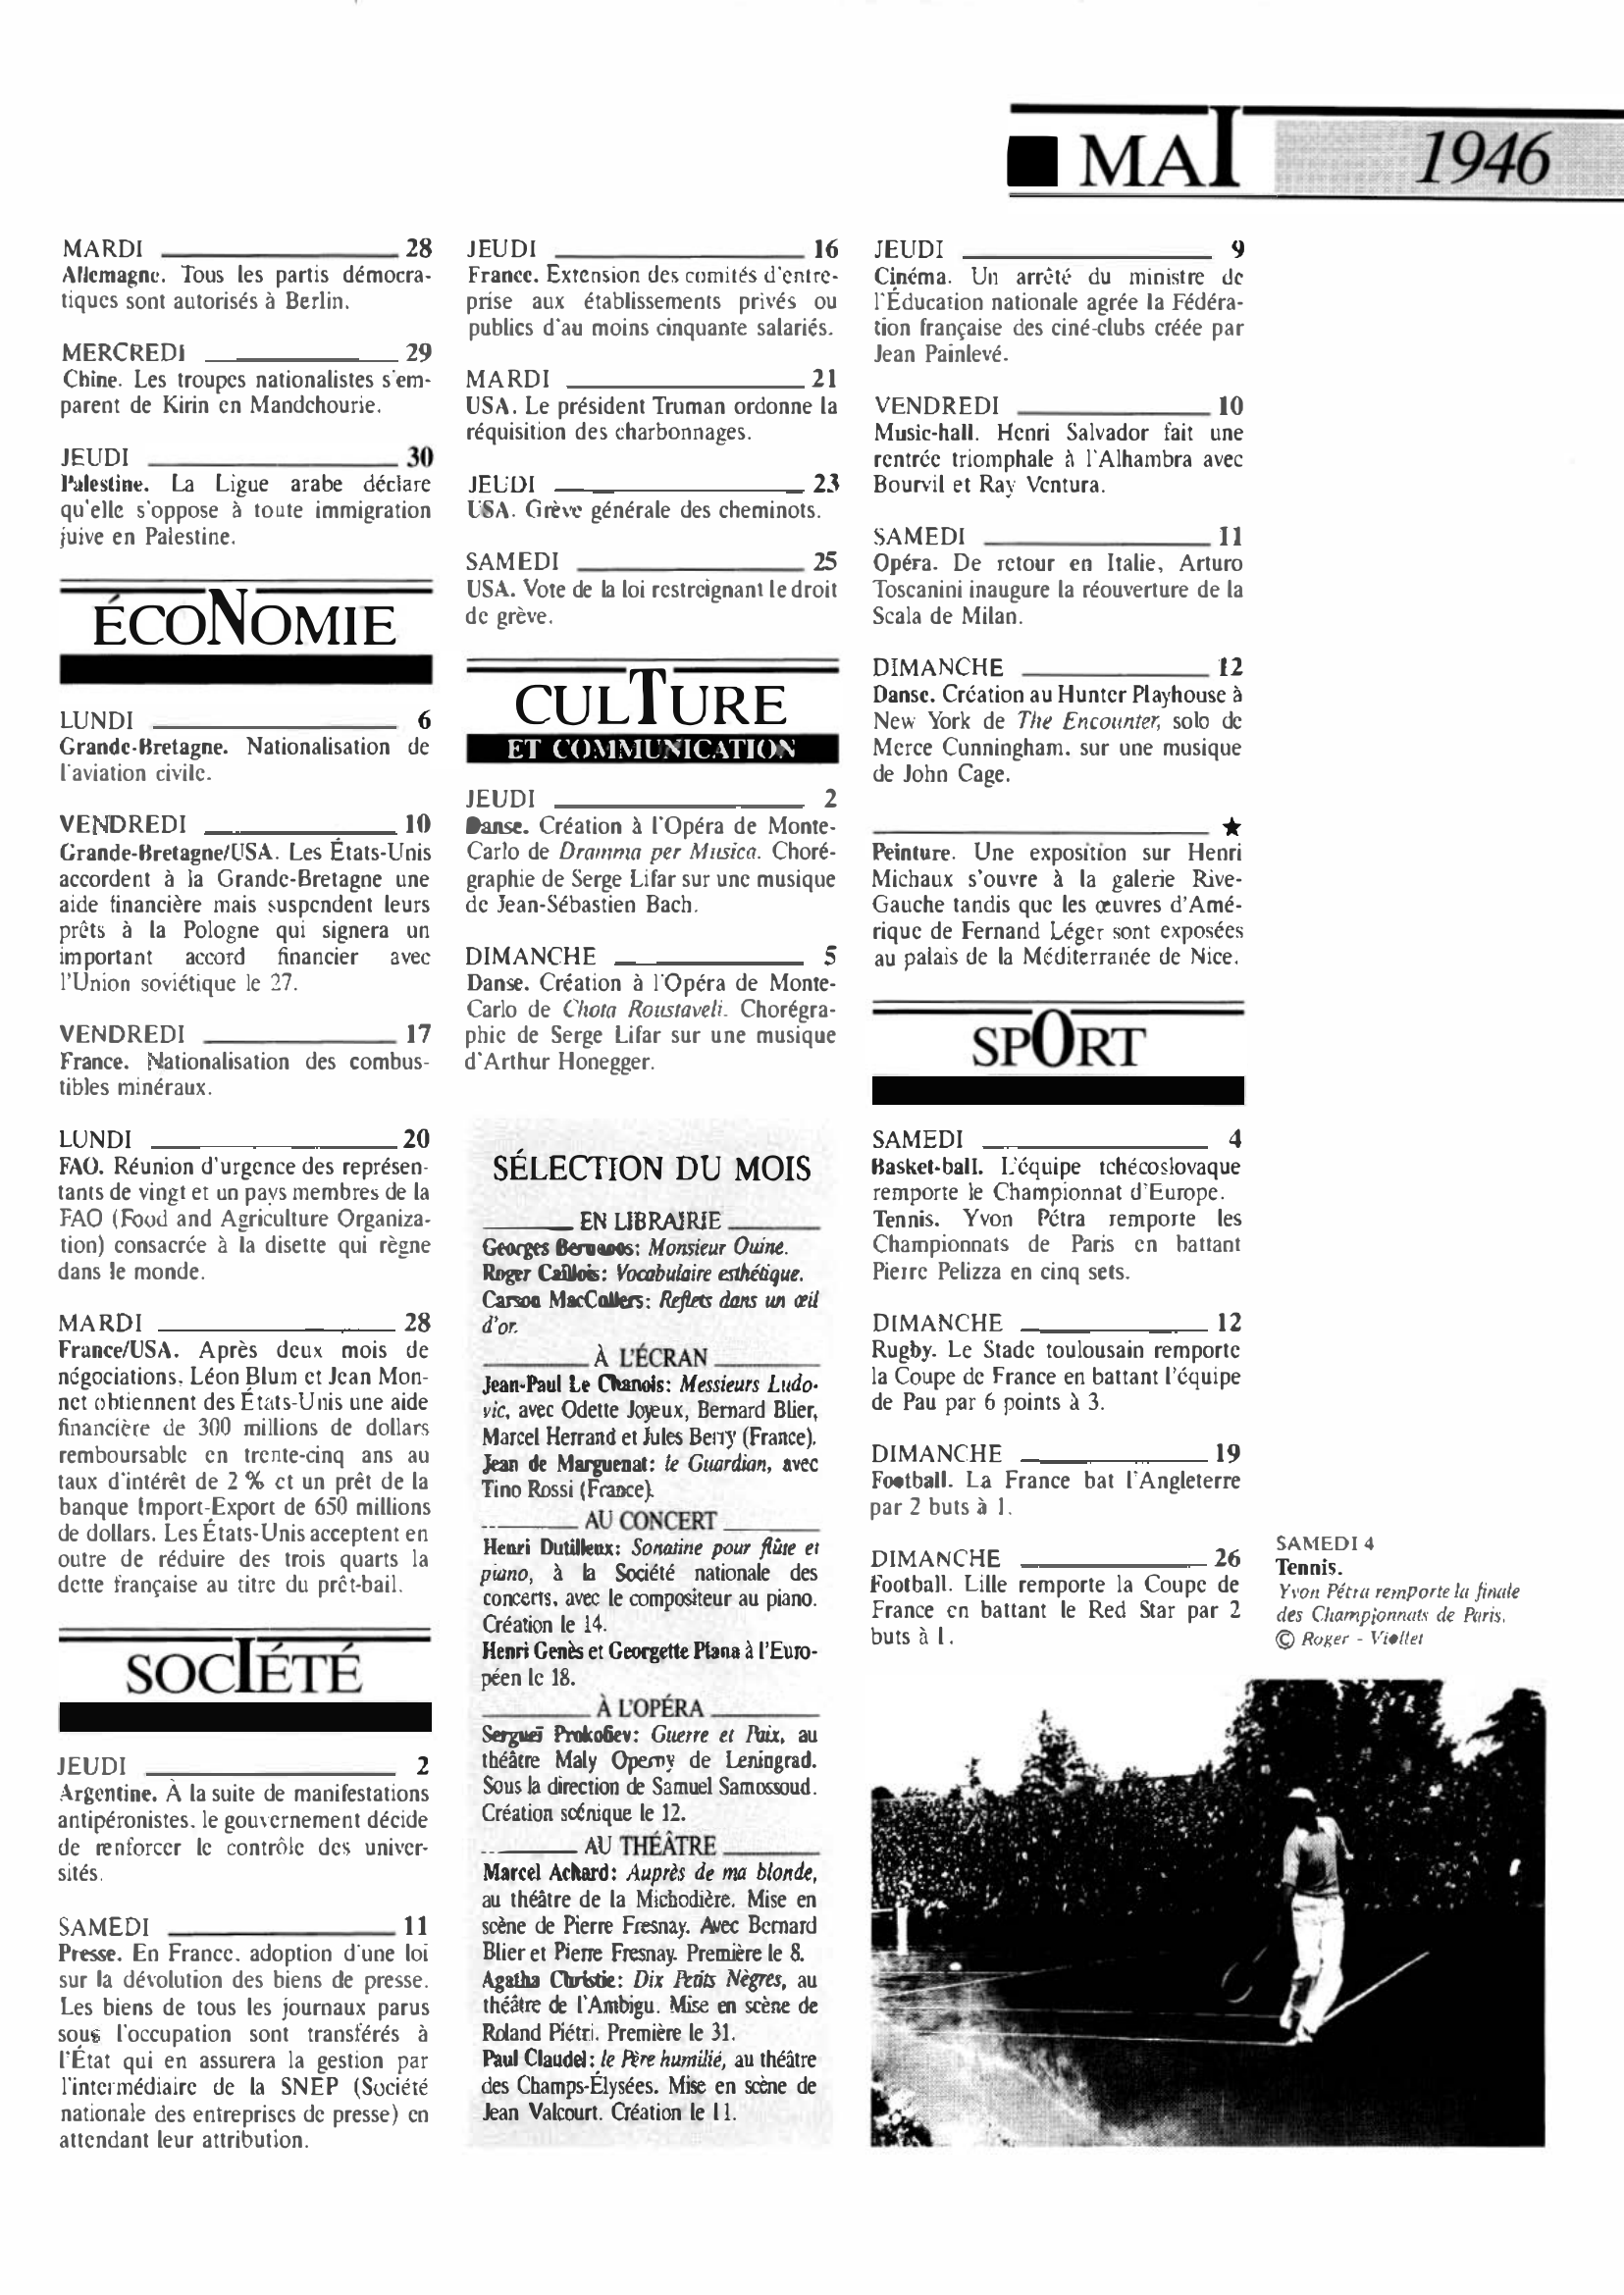 Prévisualisation du document Mai 1946 dans le monde (histoire chronologique)